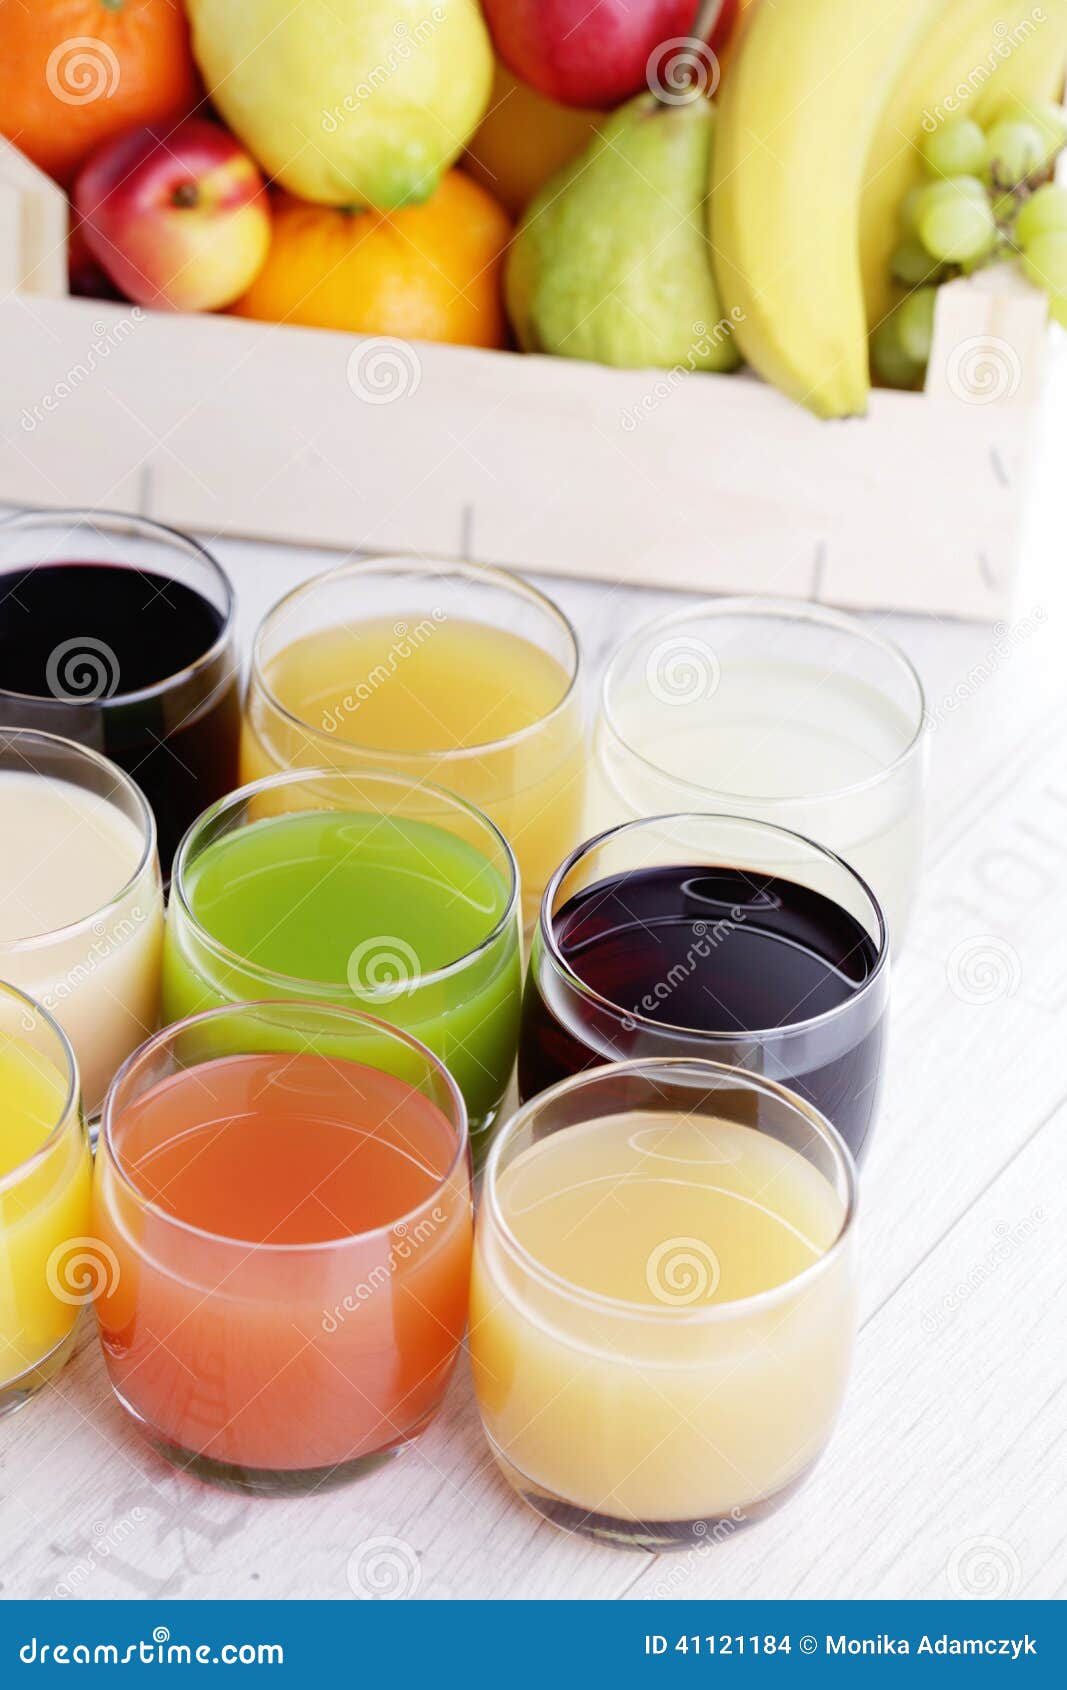 汁液的汇集. 许多各种各样的水果的汁液-饮料和饮料